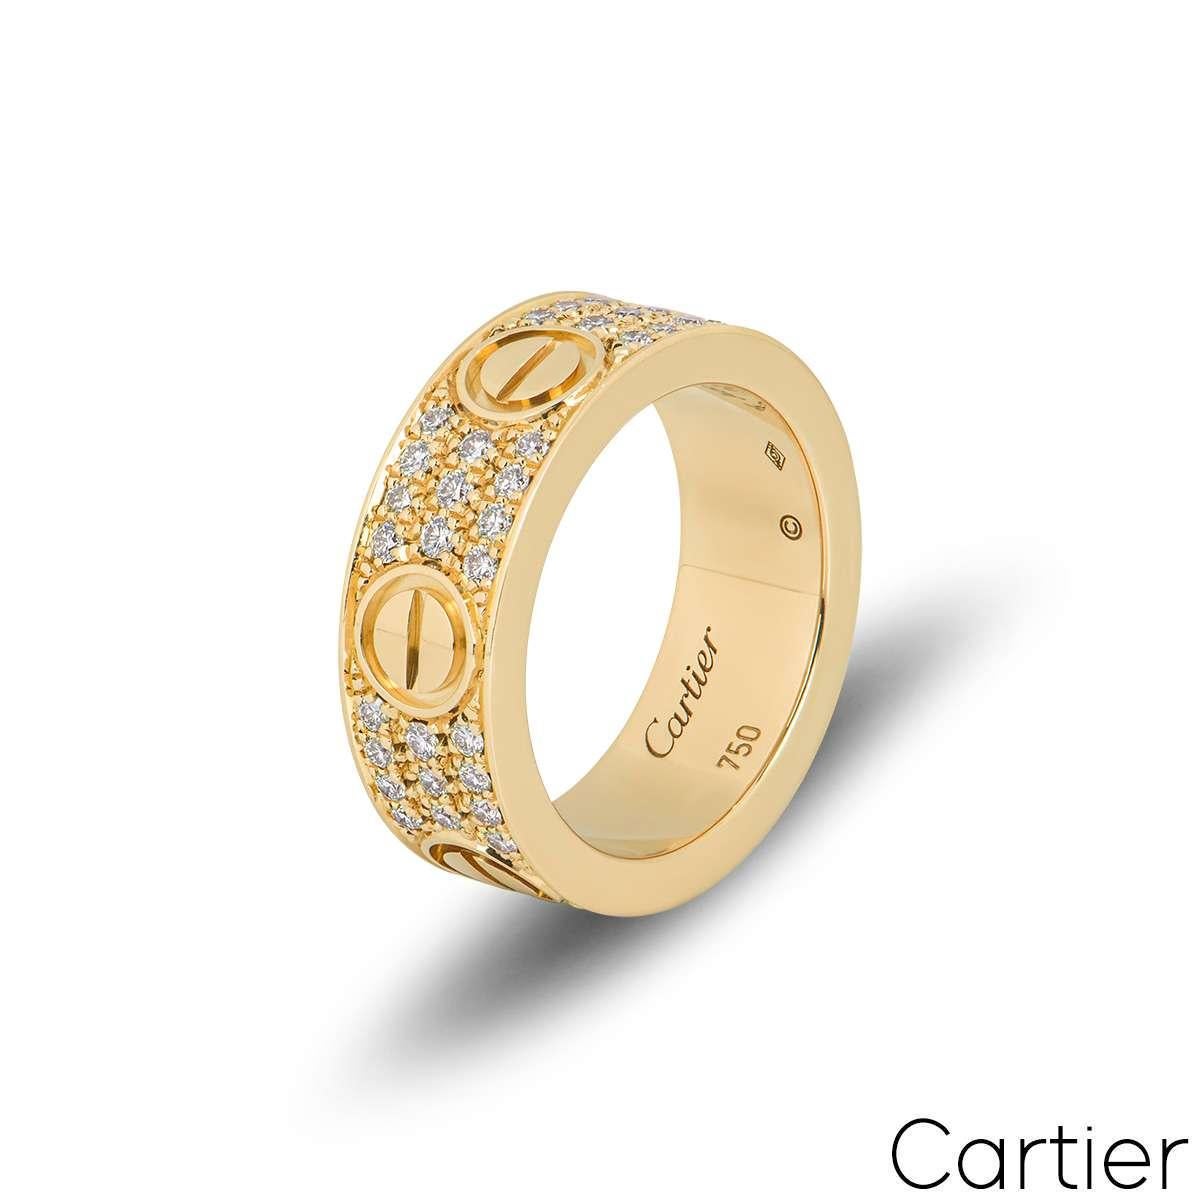 Bague en or jaune 18 carats, ornée de diamants, de la collection Love de Cartier. La bague comprend les motifs emblématiques de la vis sur le pourtour extérieur, avec 66 diamants ronds de taille brillant sertis entre chaque motif de la vis, pour un